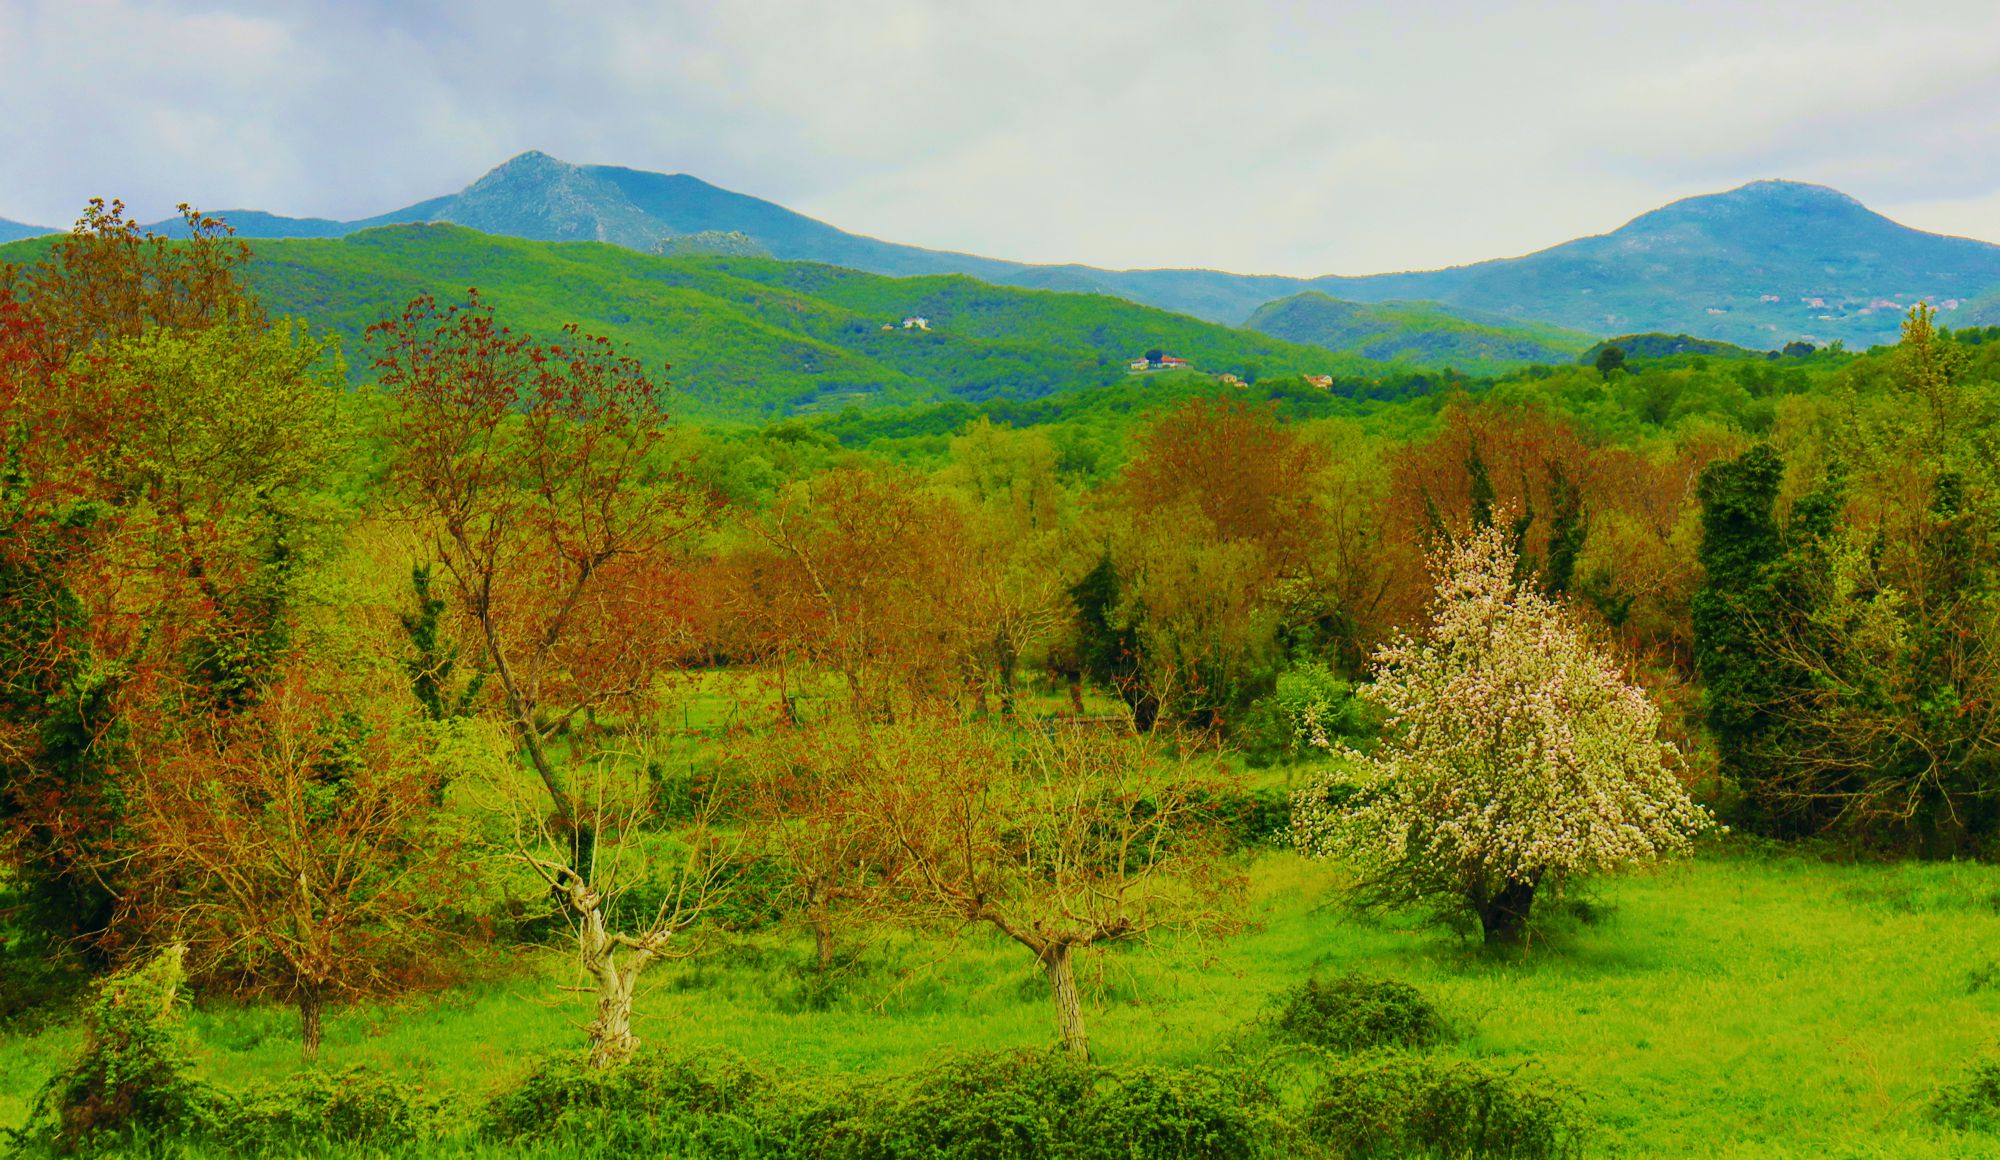 Βλάστηση του Λύκαιου: Το αγροδασικό τοπίο στις παλιές Καρυές. Ψηλά, οι κορυφές του Λύκαιου